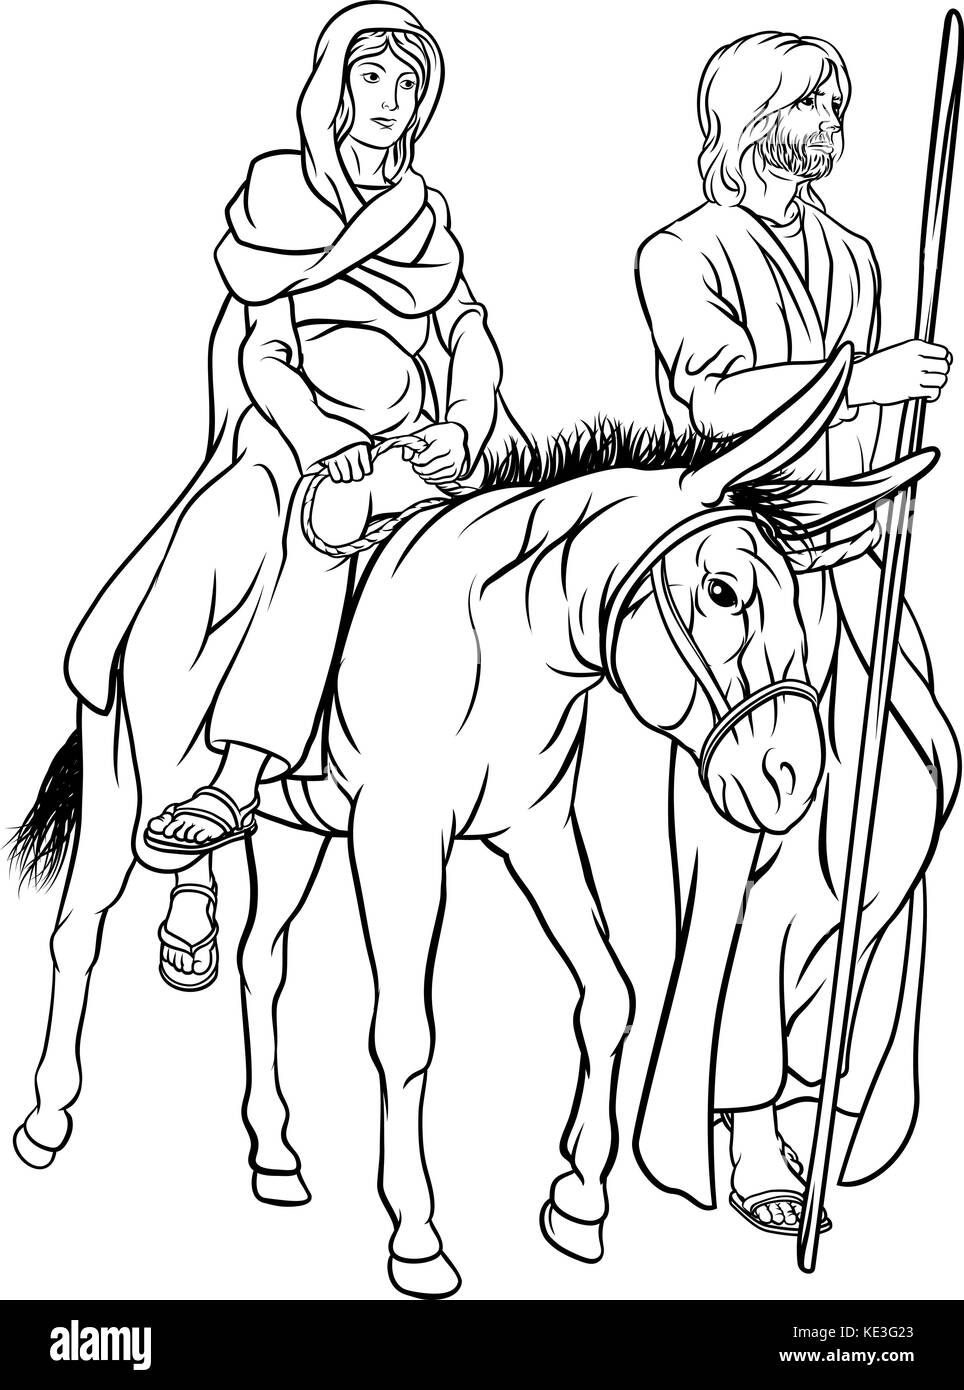 Religiöse christliche Geburt Weihnachtsdarstellung von Josef und der Jungfrau Maria, der Mutter Jesu, die auf einem Esel auf ihrer Reise in die Wüste reitet Stock Vektor